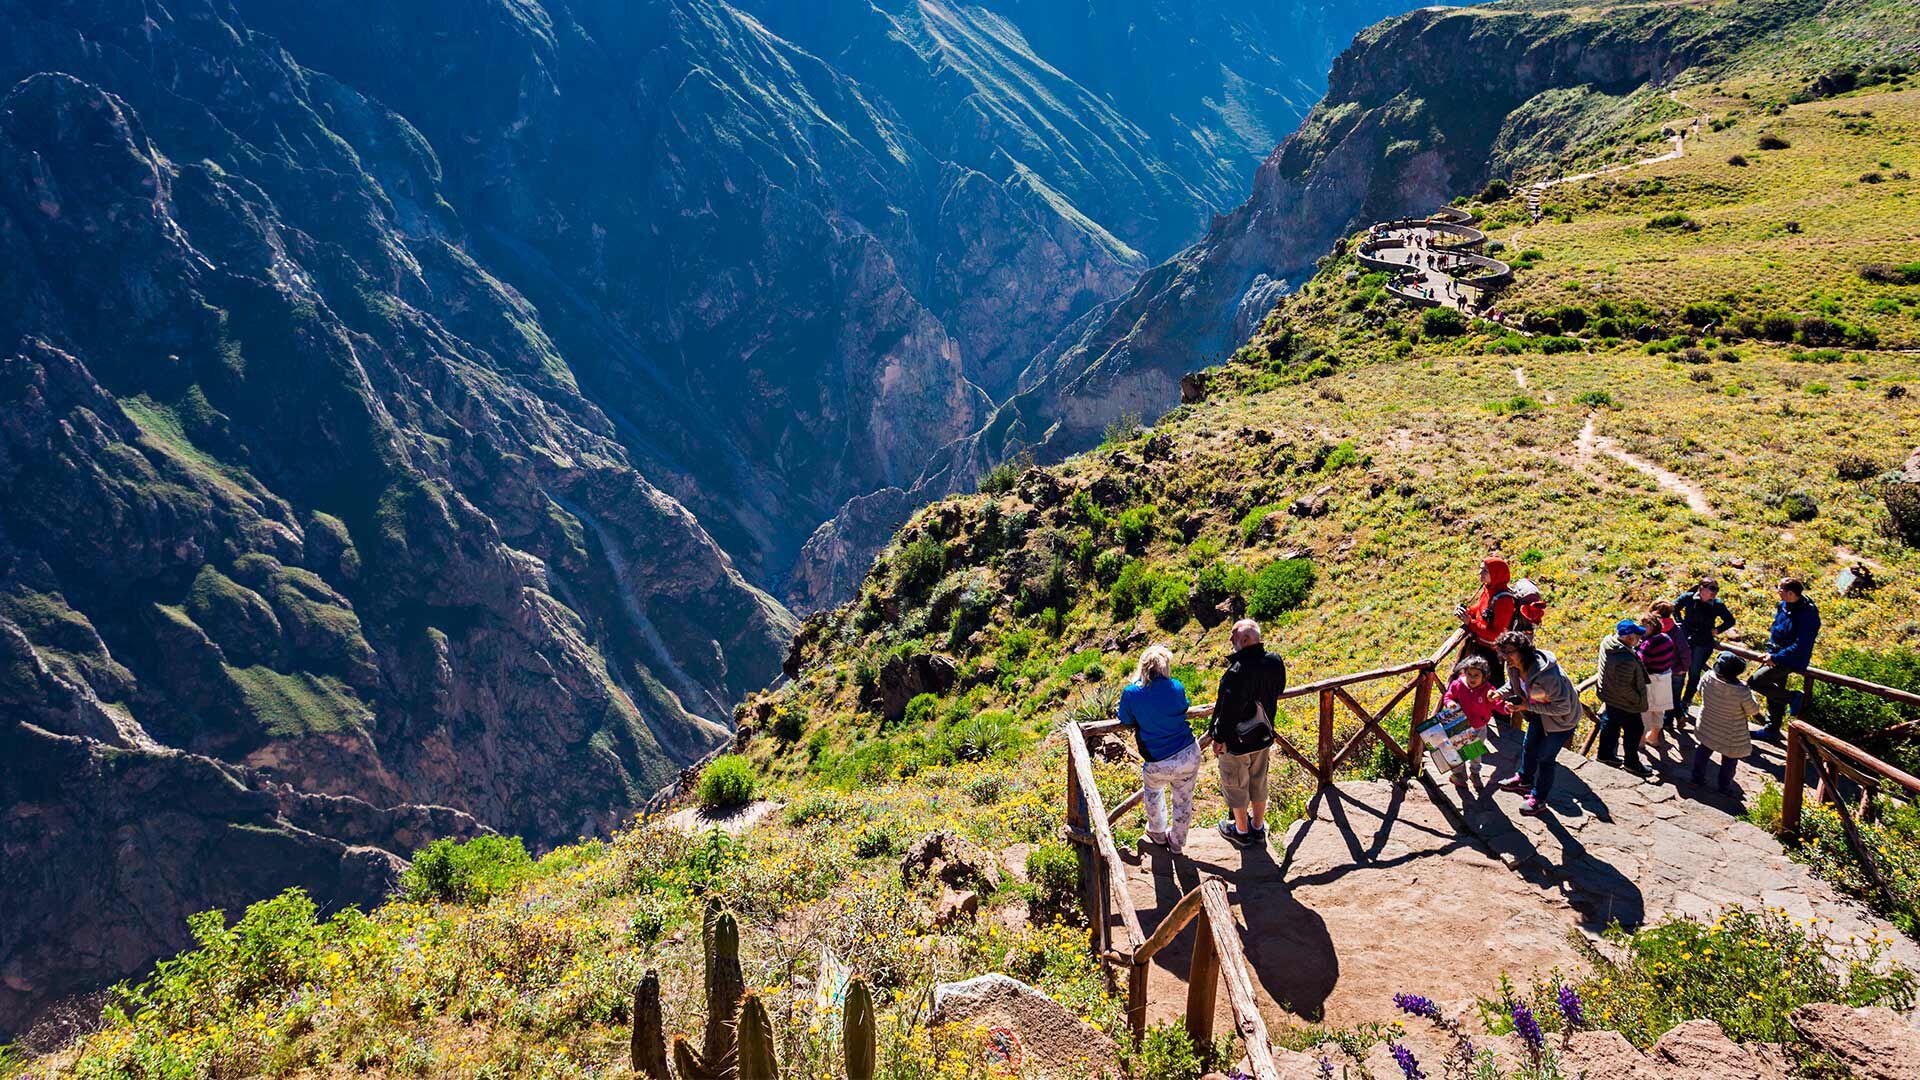 Este impresionante valle se encuentra en la región de Arequipa y es famoso por ser uno de los cañones más profundos del mundo, llegando a alcanzar una profundidad de más de 3,000 metros. El valle es un lugar de gran belleza natural, hogar del majestuoso cóndor andino y de terrazas agrícolas construidas por las culturas preincaicas. (Foto: Perú Travel).